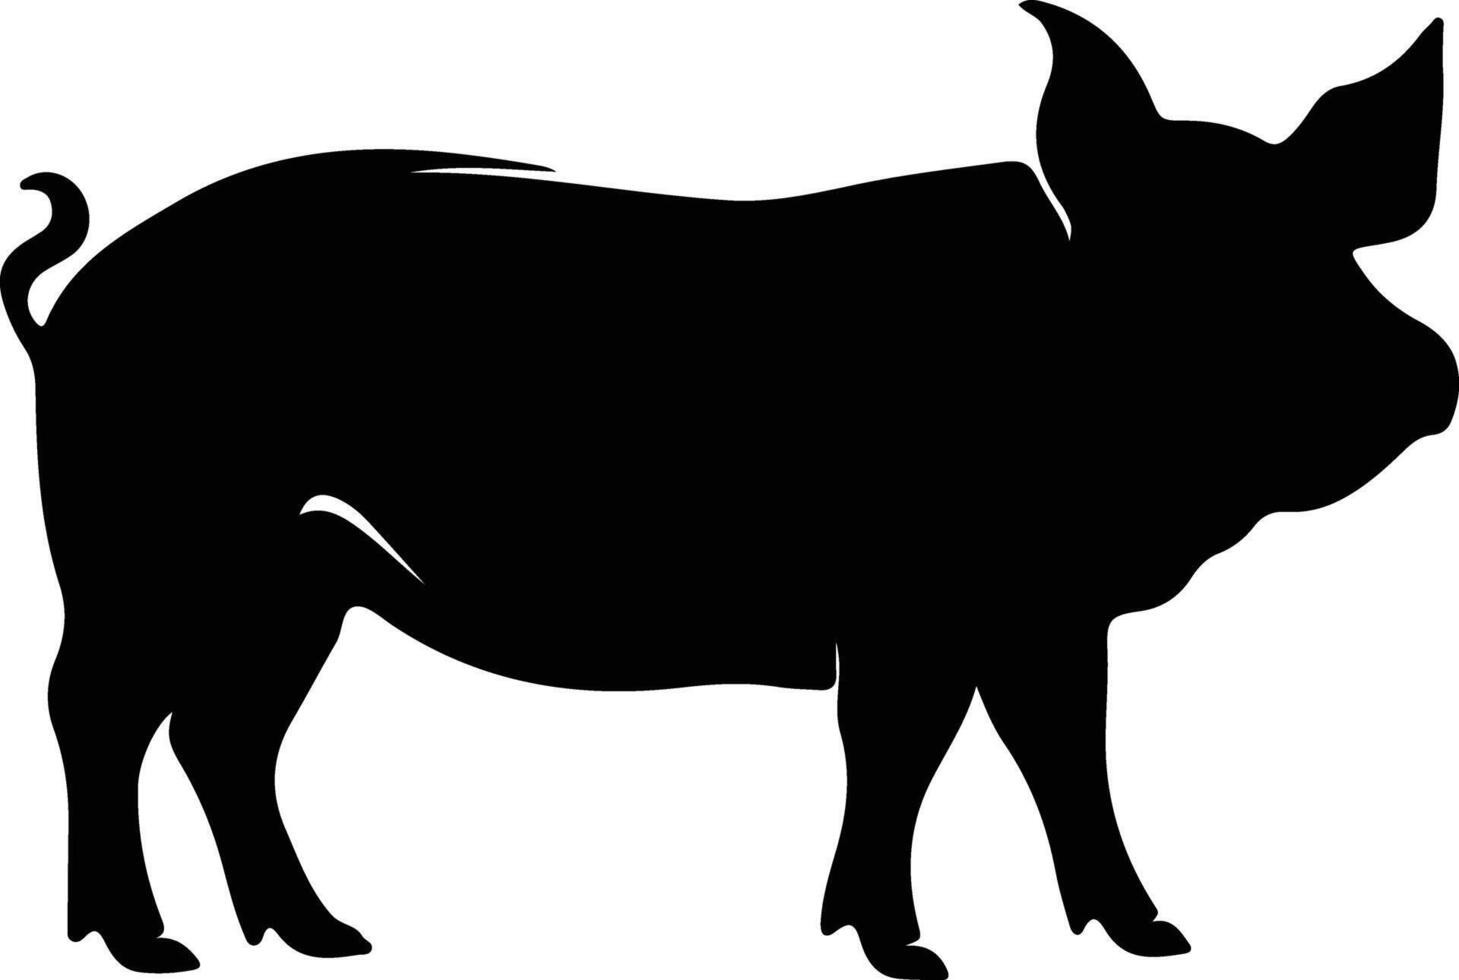 Schwein schwarz Silhouette vektor